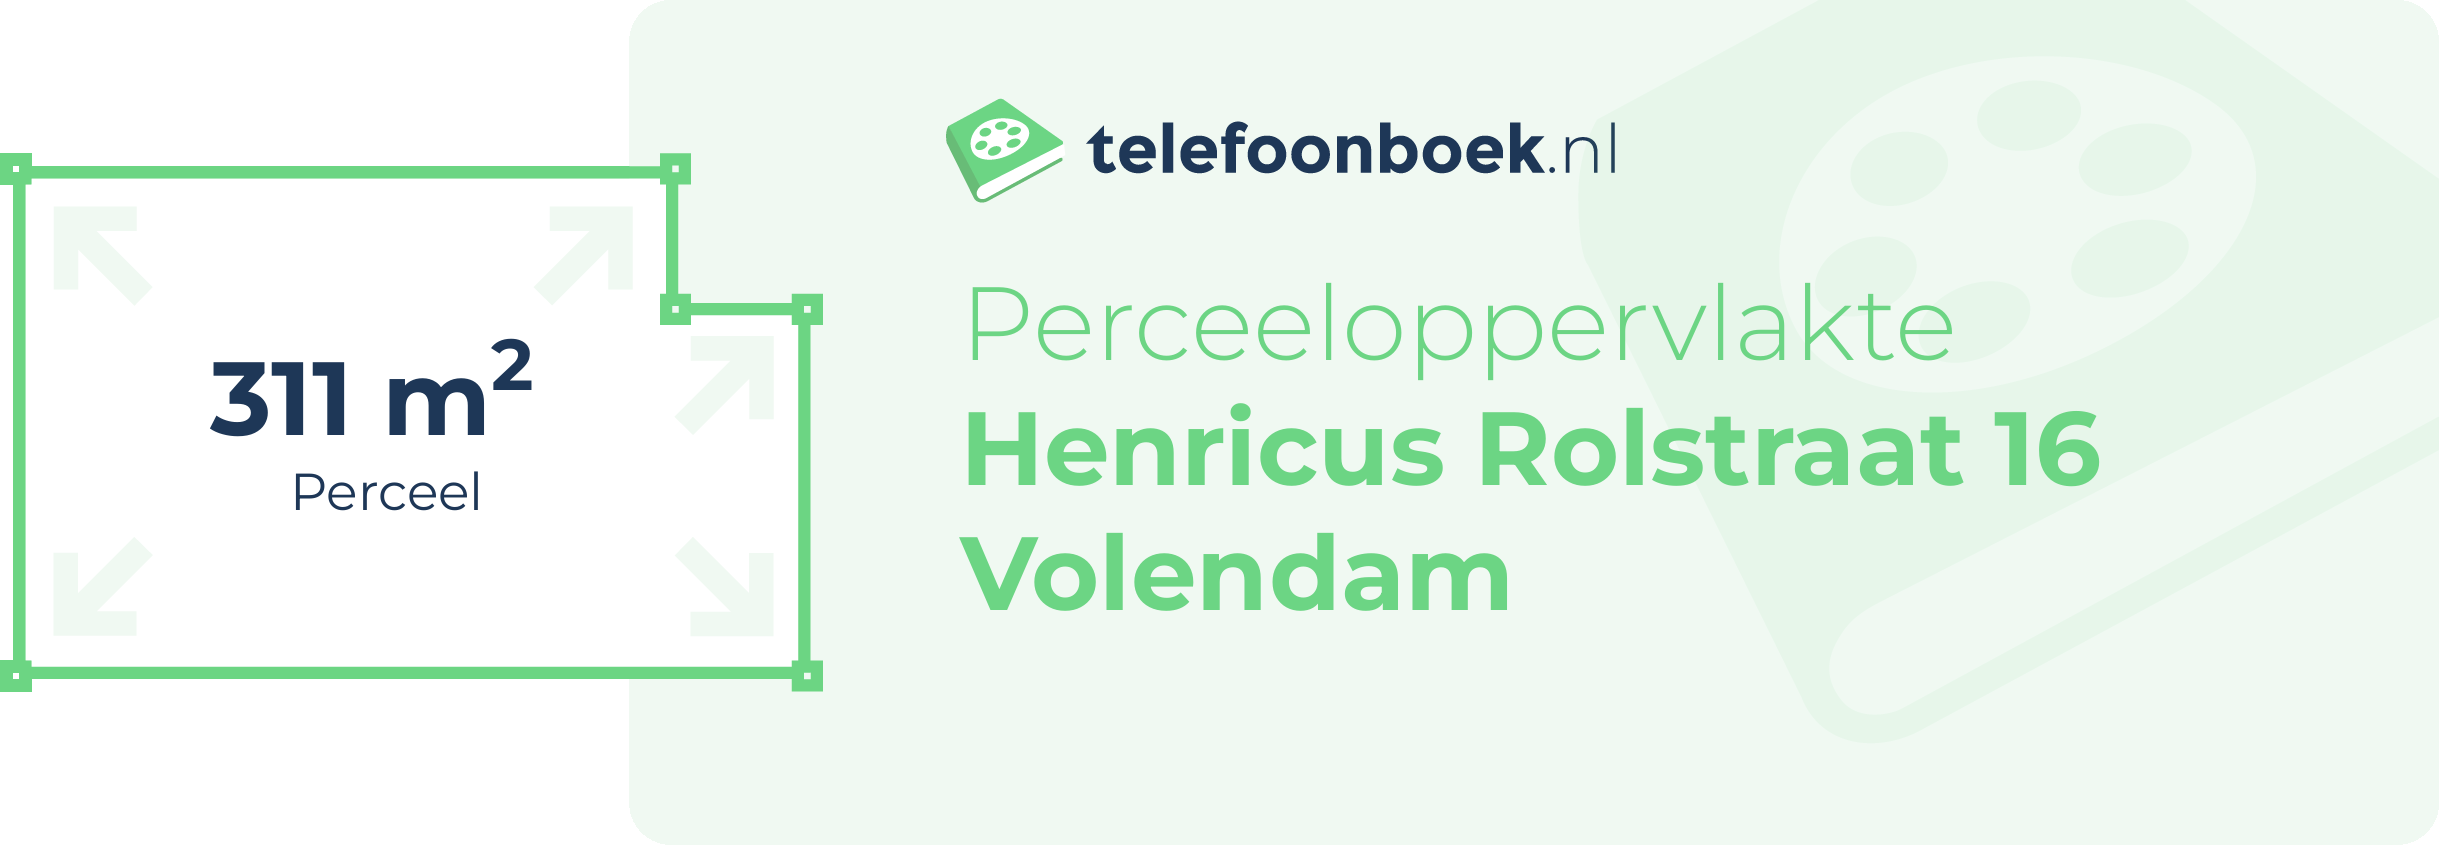 Perceeloppervlakte Henricus Rolstraat 16 Volendam